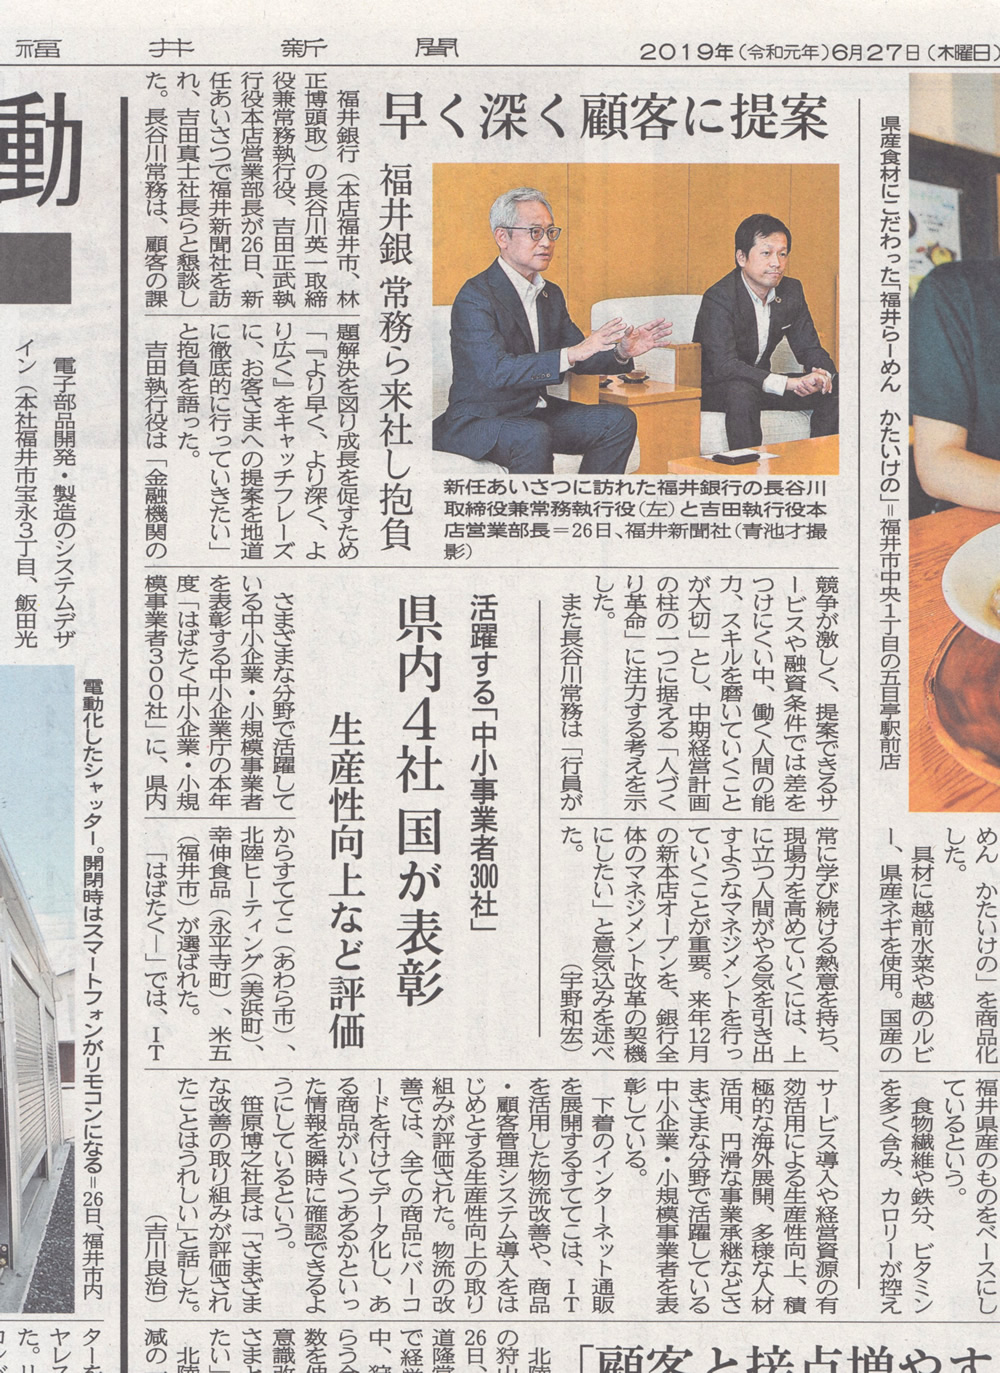 福井新聞に「はばたく中小企業300社」として表彰されたことを掲載していただきました - 福井県あわら市のアパレル商社「すててこ株式会社」